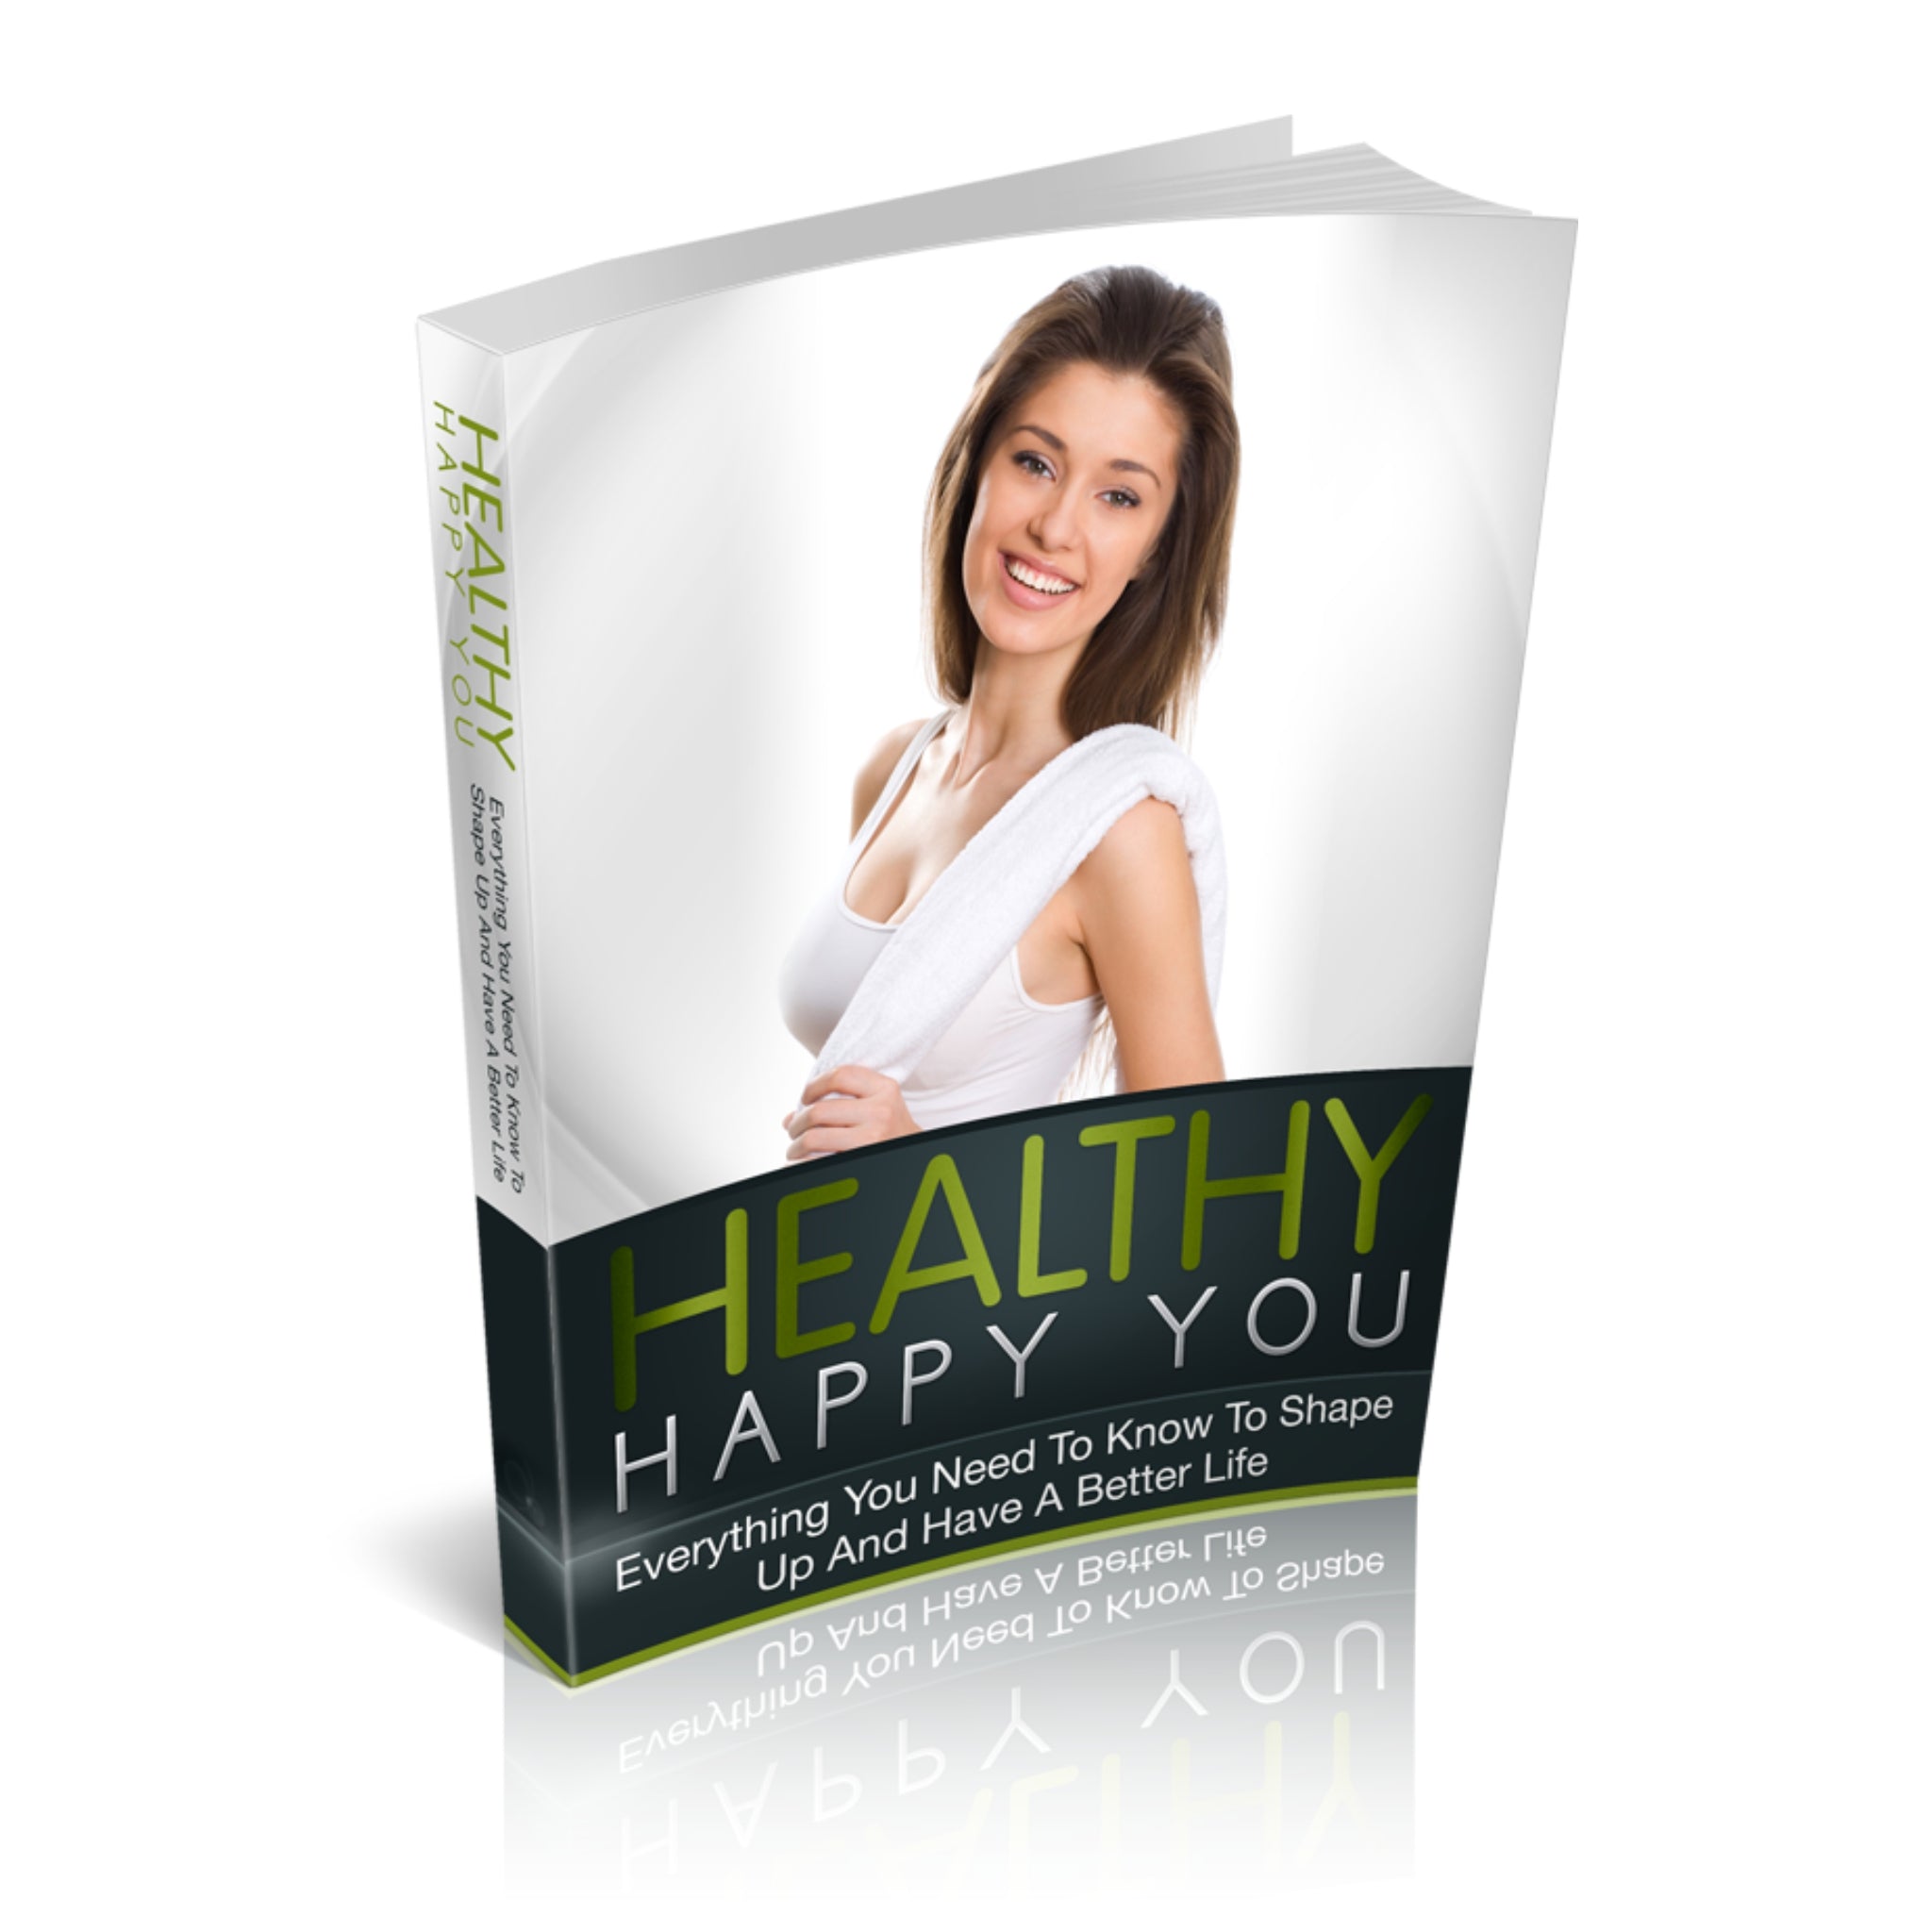 Healthy Happy You Ebook